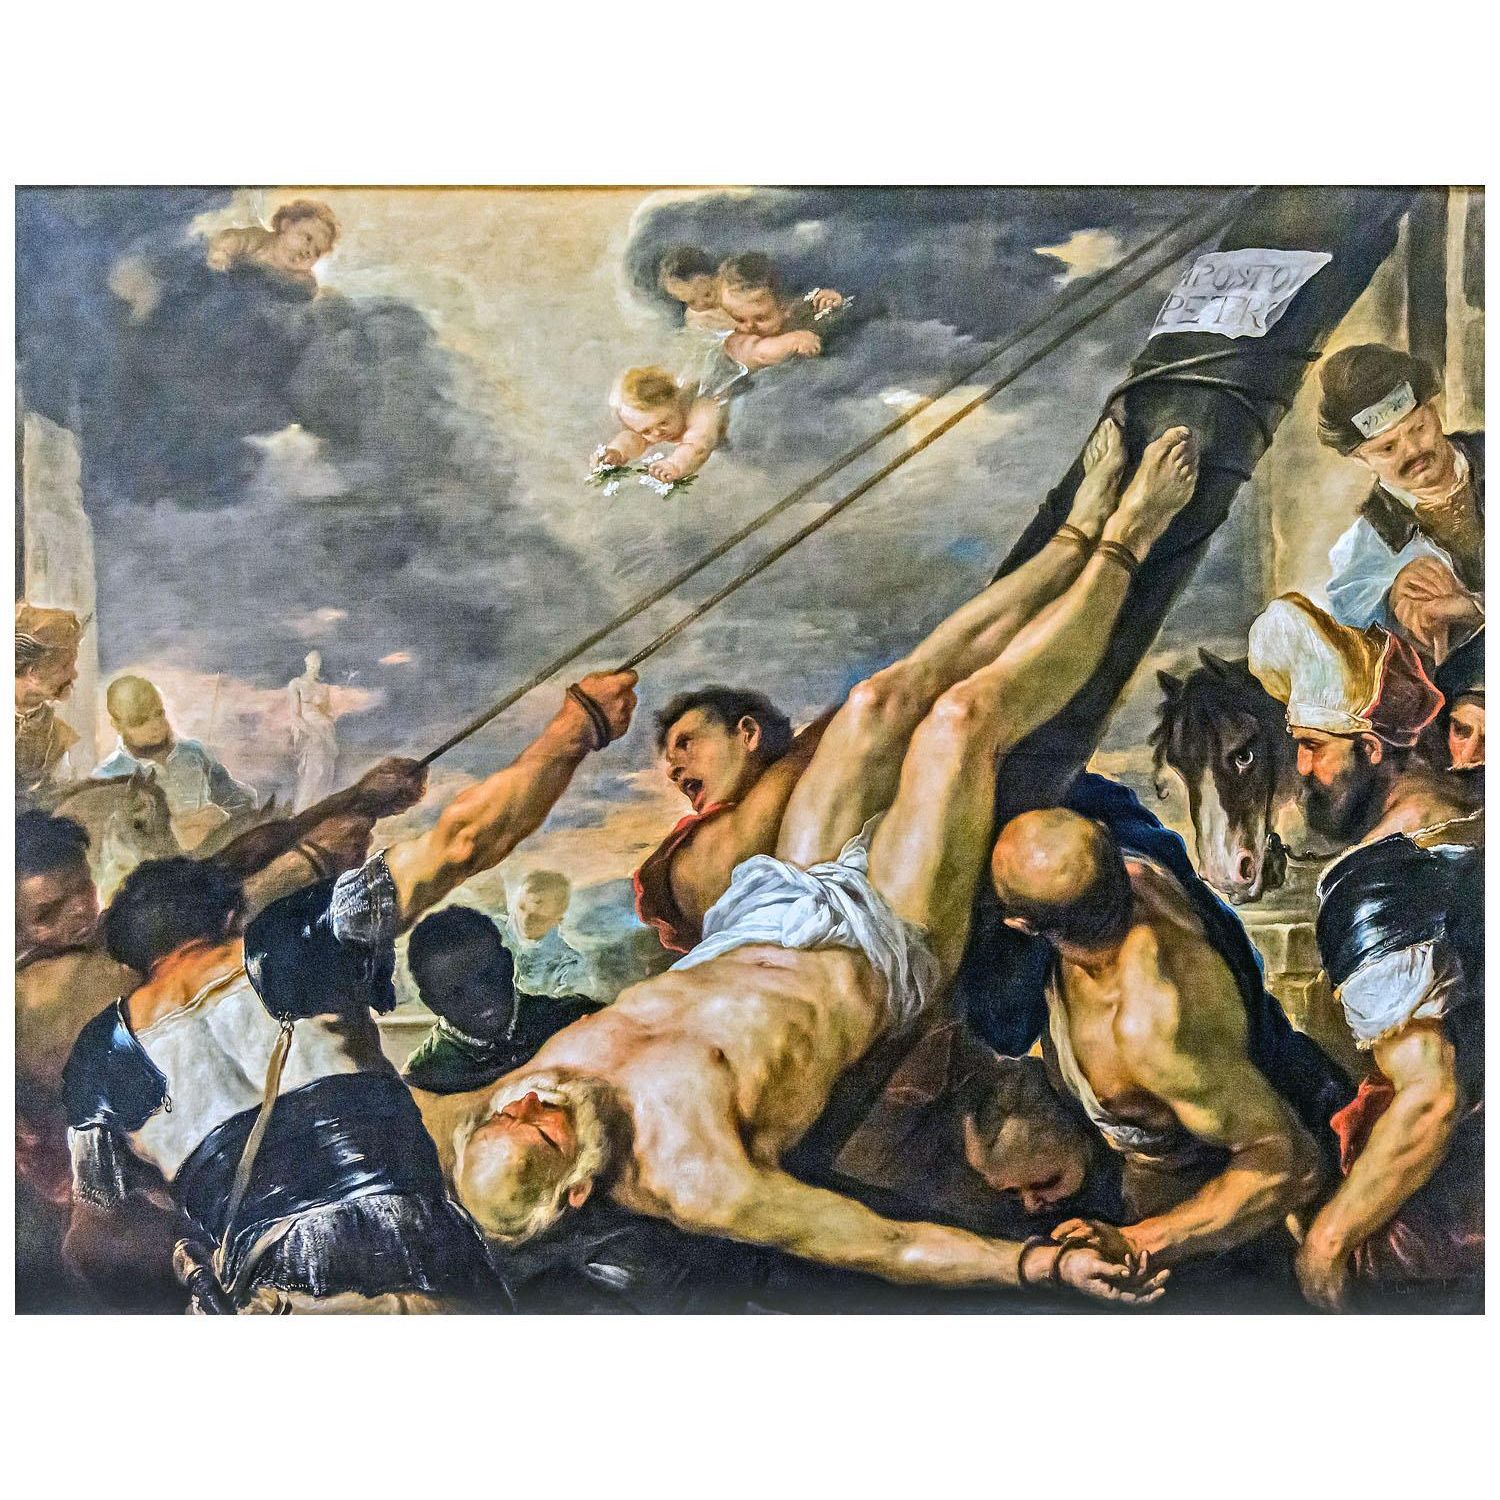 Luca Giordano. Crocifissione di San Pietro. 1659. Gallerie dell'Accademia Venezia